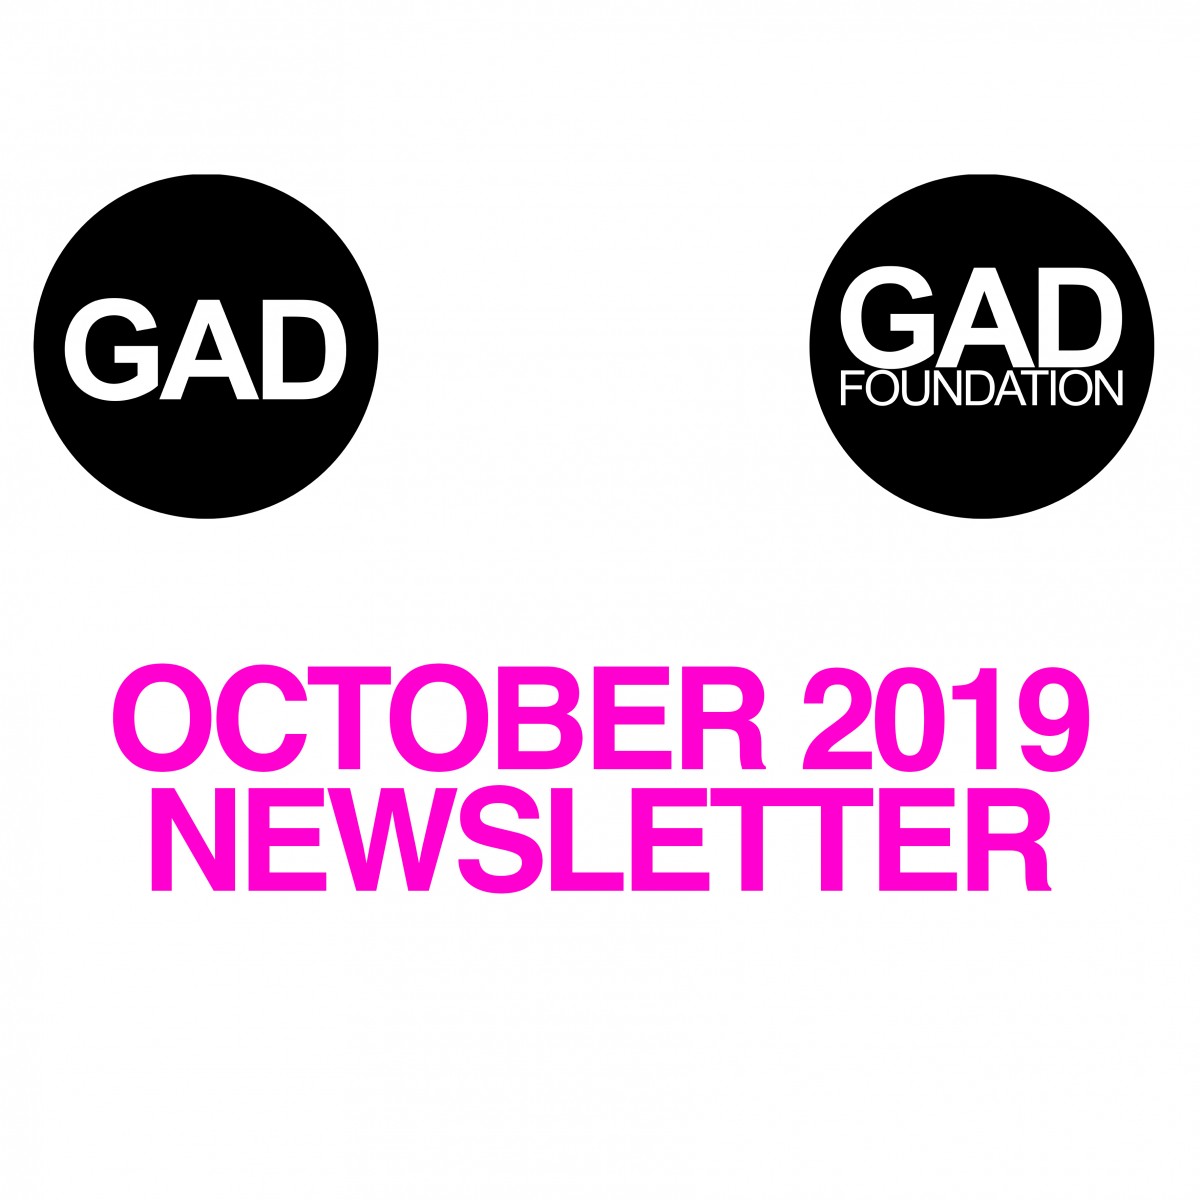 October 2019 Newsletter